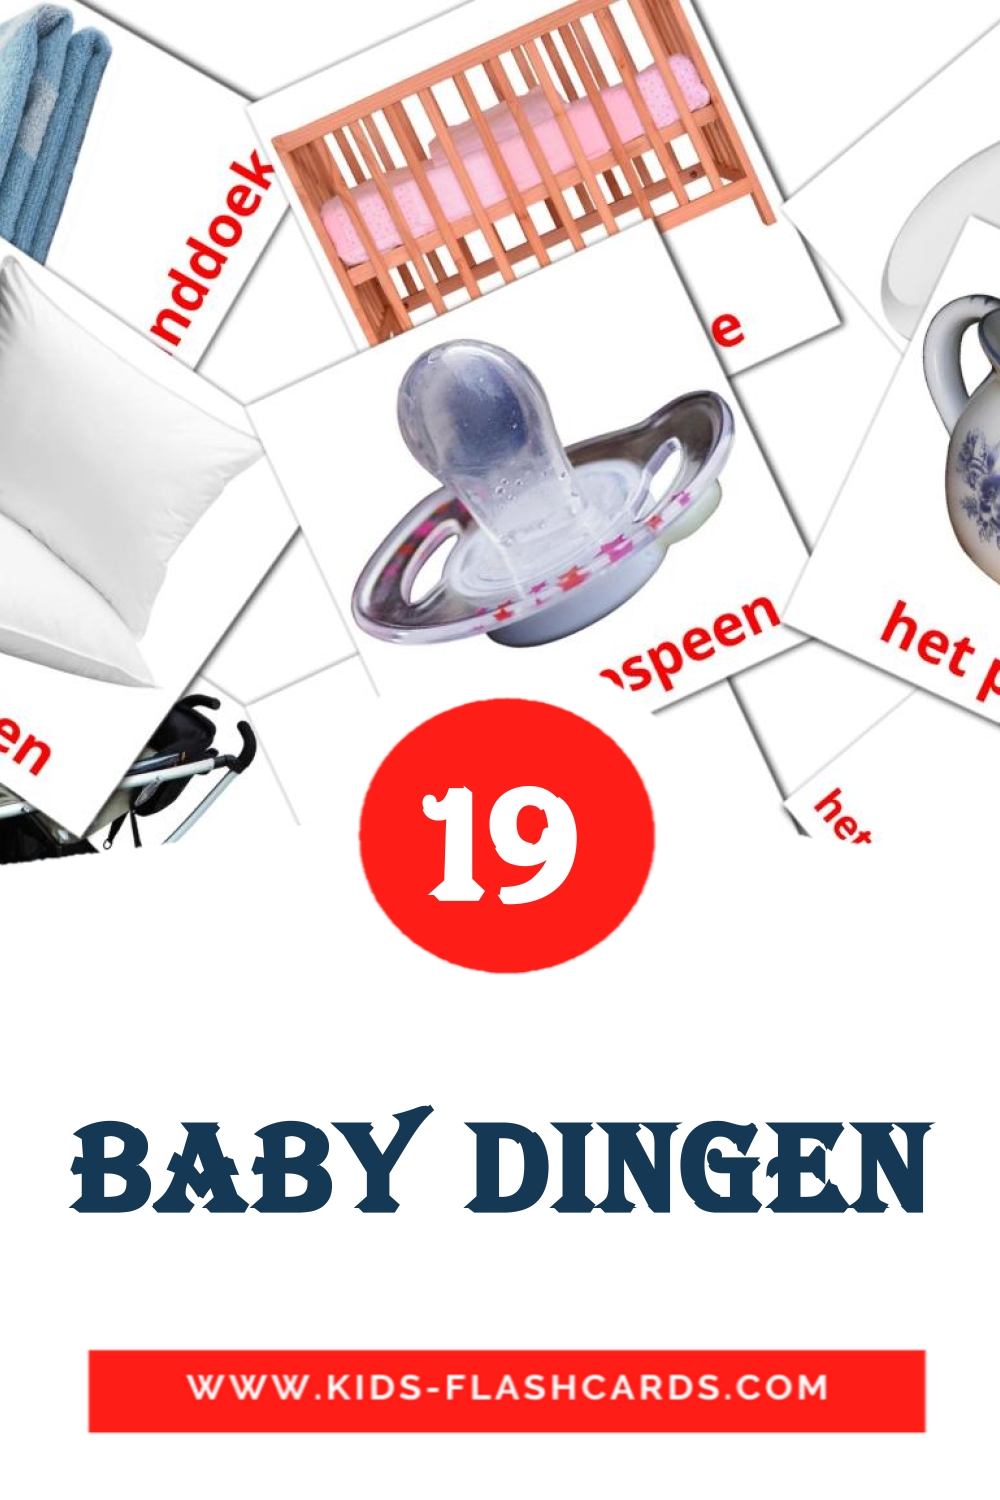 Baby dingen на нидерландcком для Детского Сада (19 карточек)